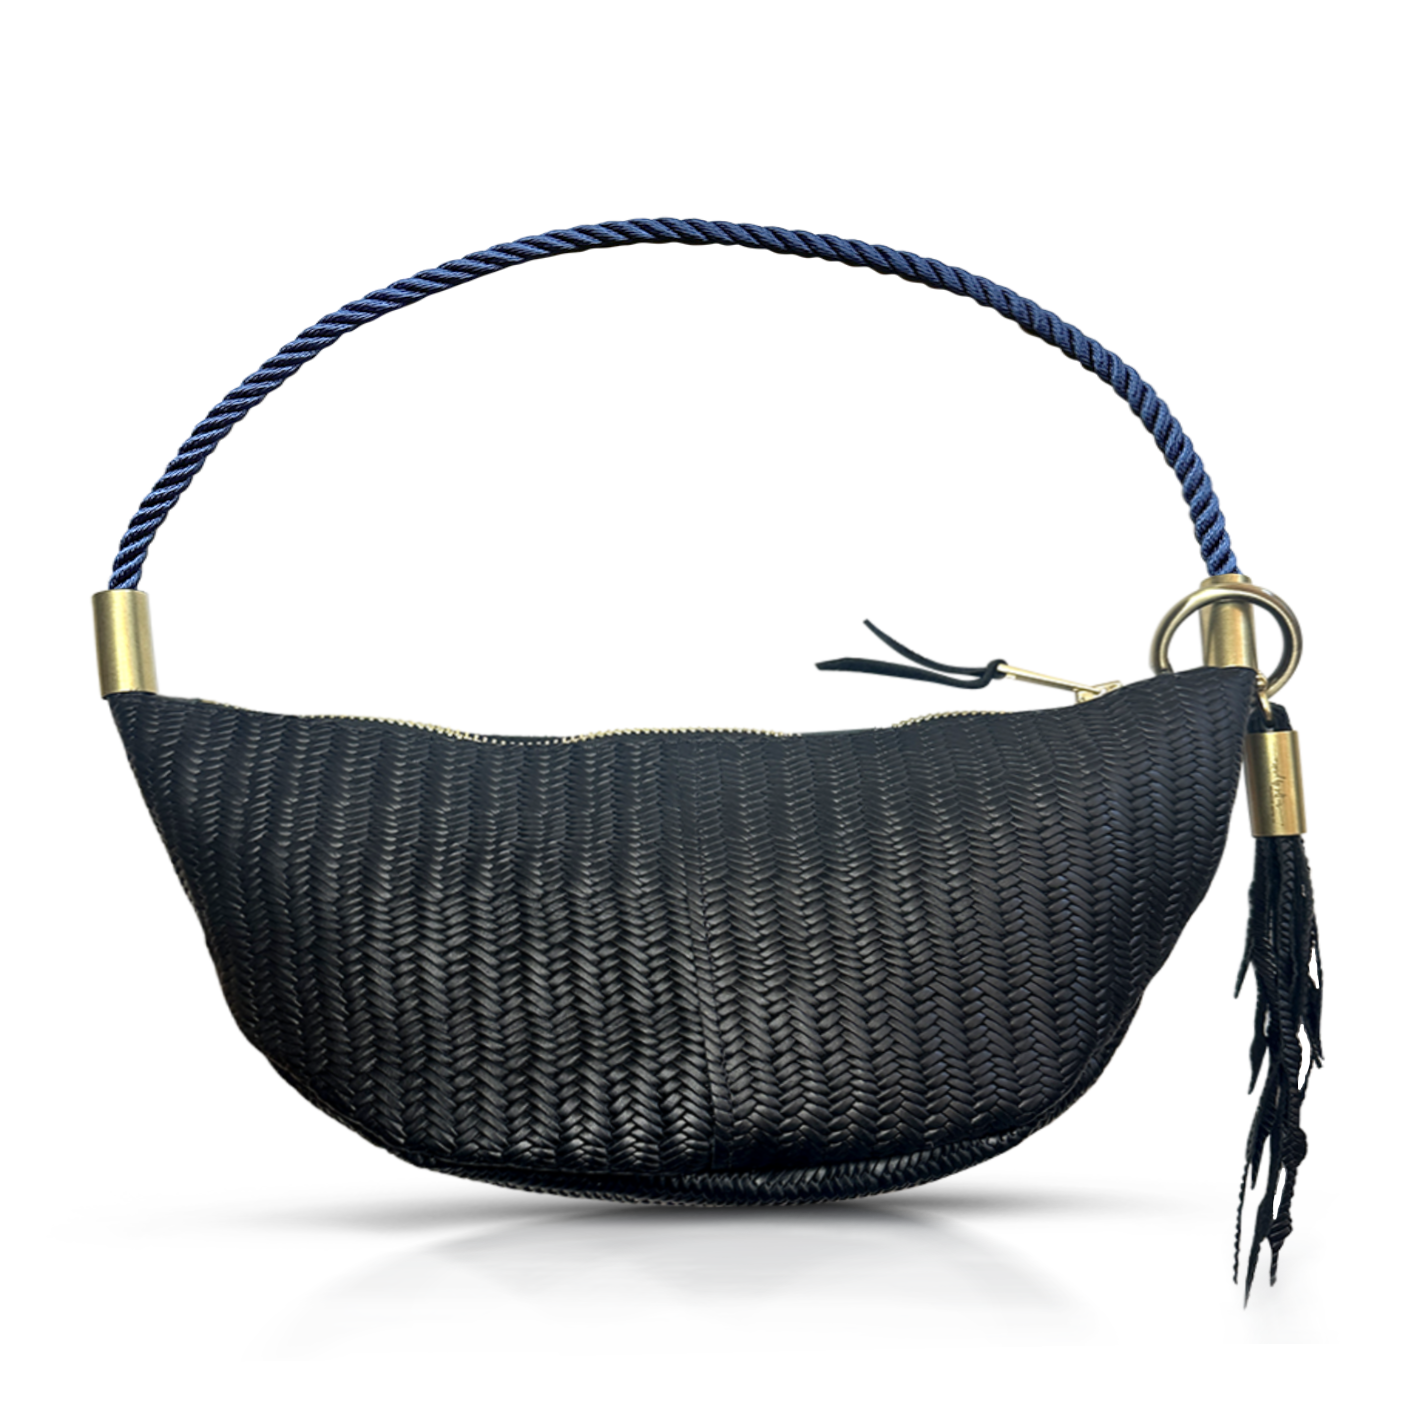 black basketweave leather sling bag with navy dock line handle